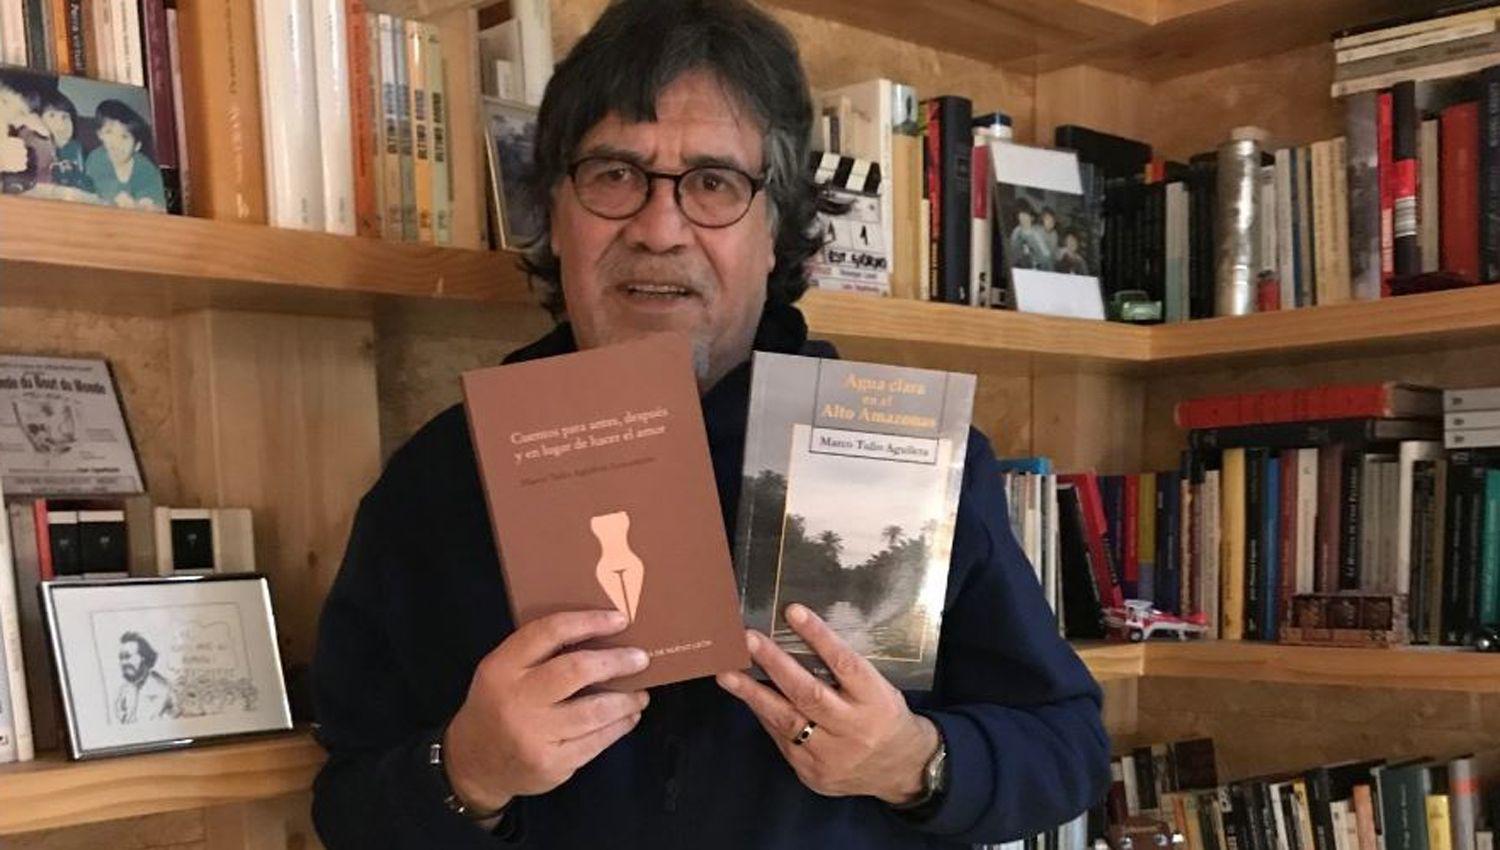 El escritor chileno Luis Sepuacutelveda murioacute por coronavirus